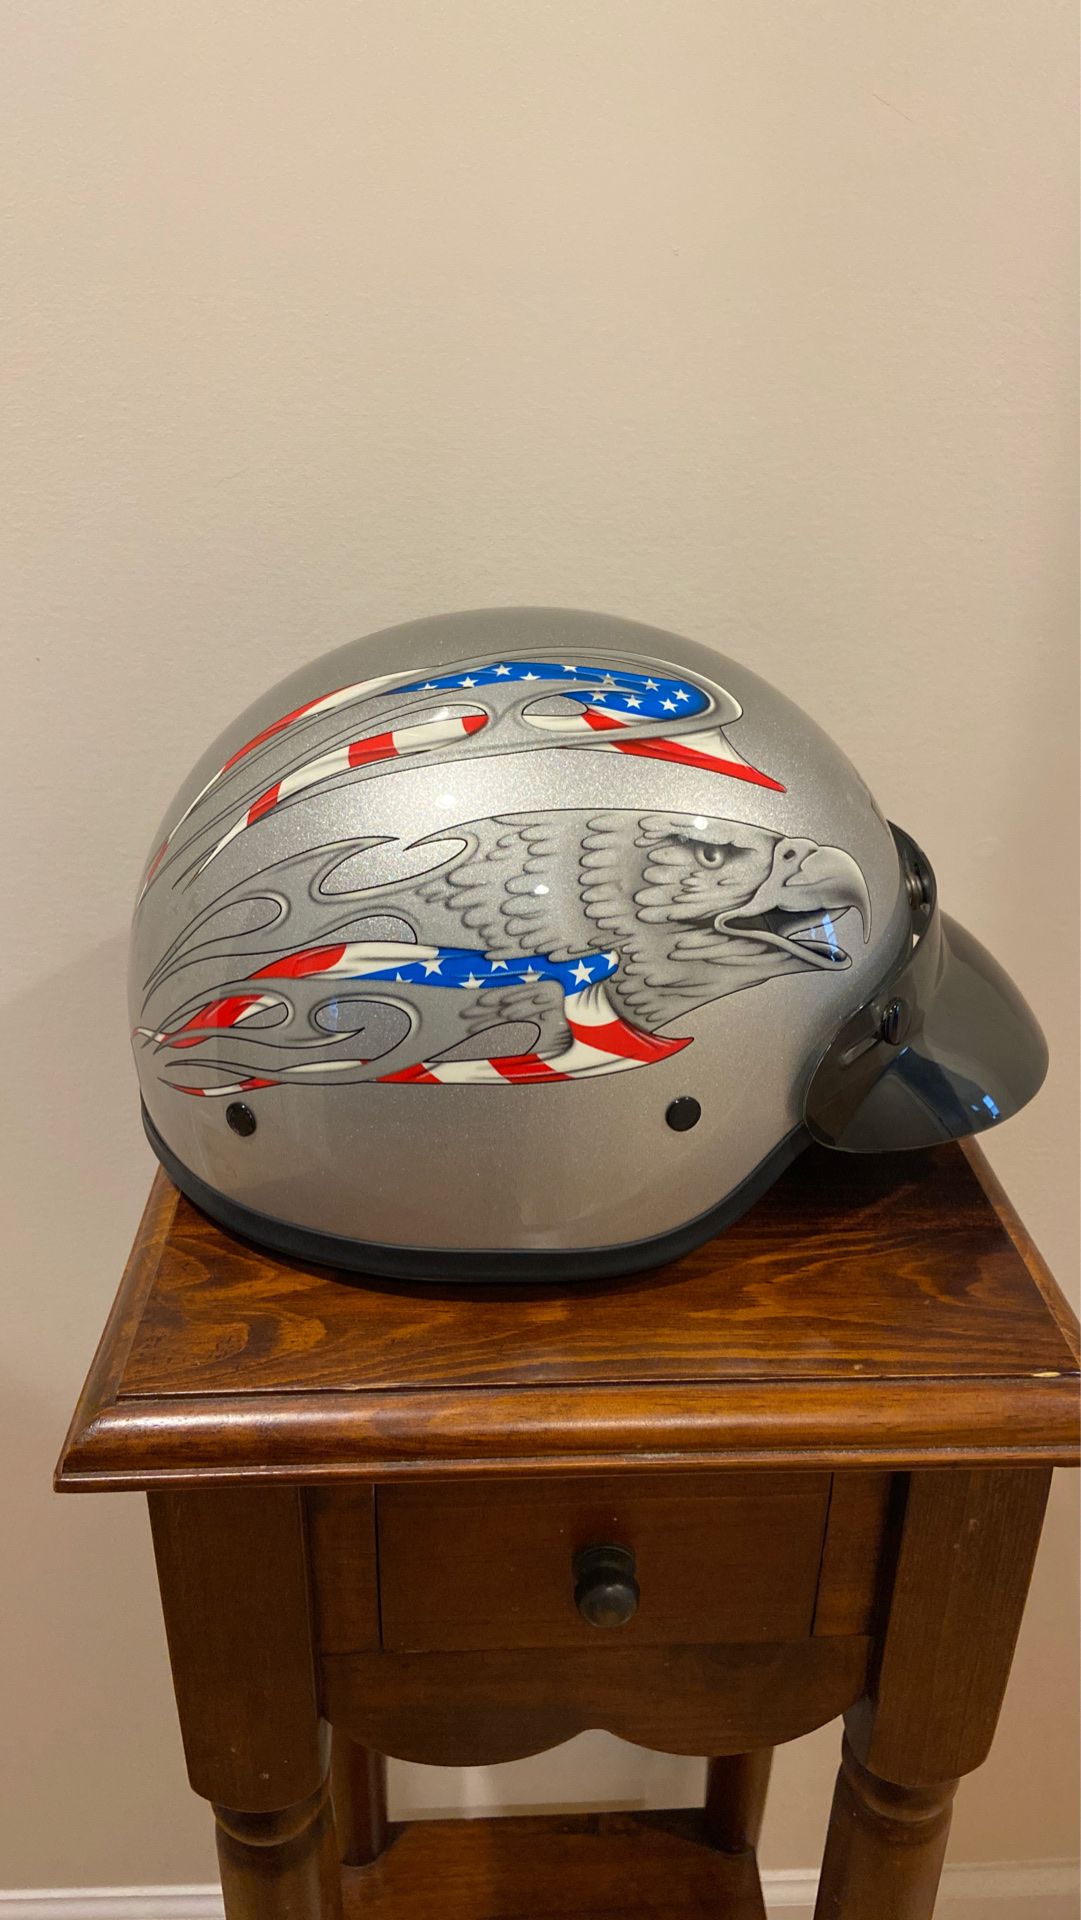 Harley Davidson motorcycle helmet